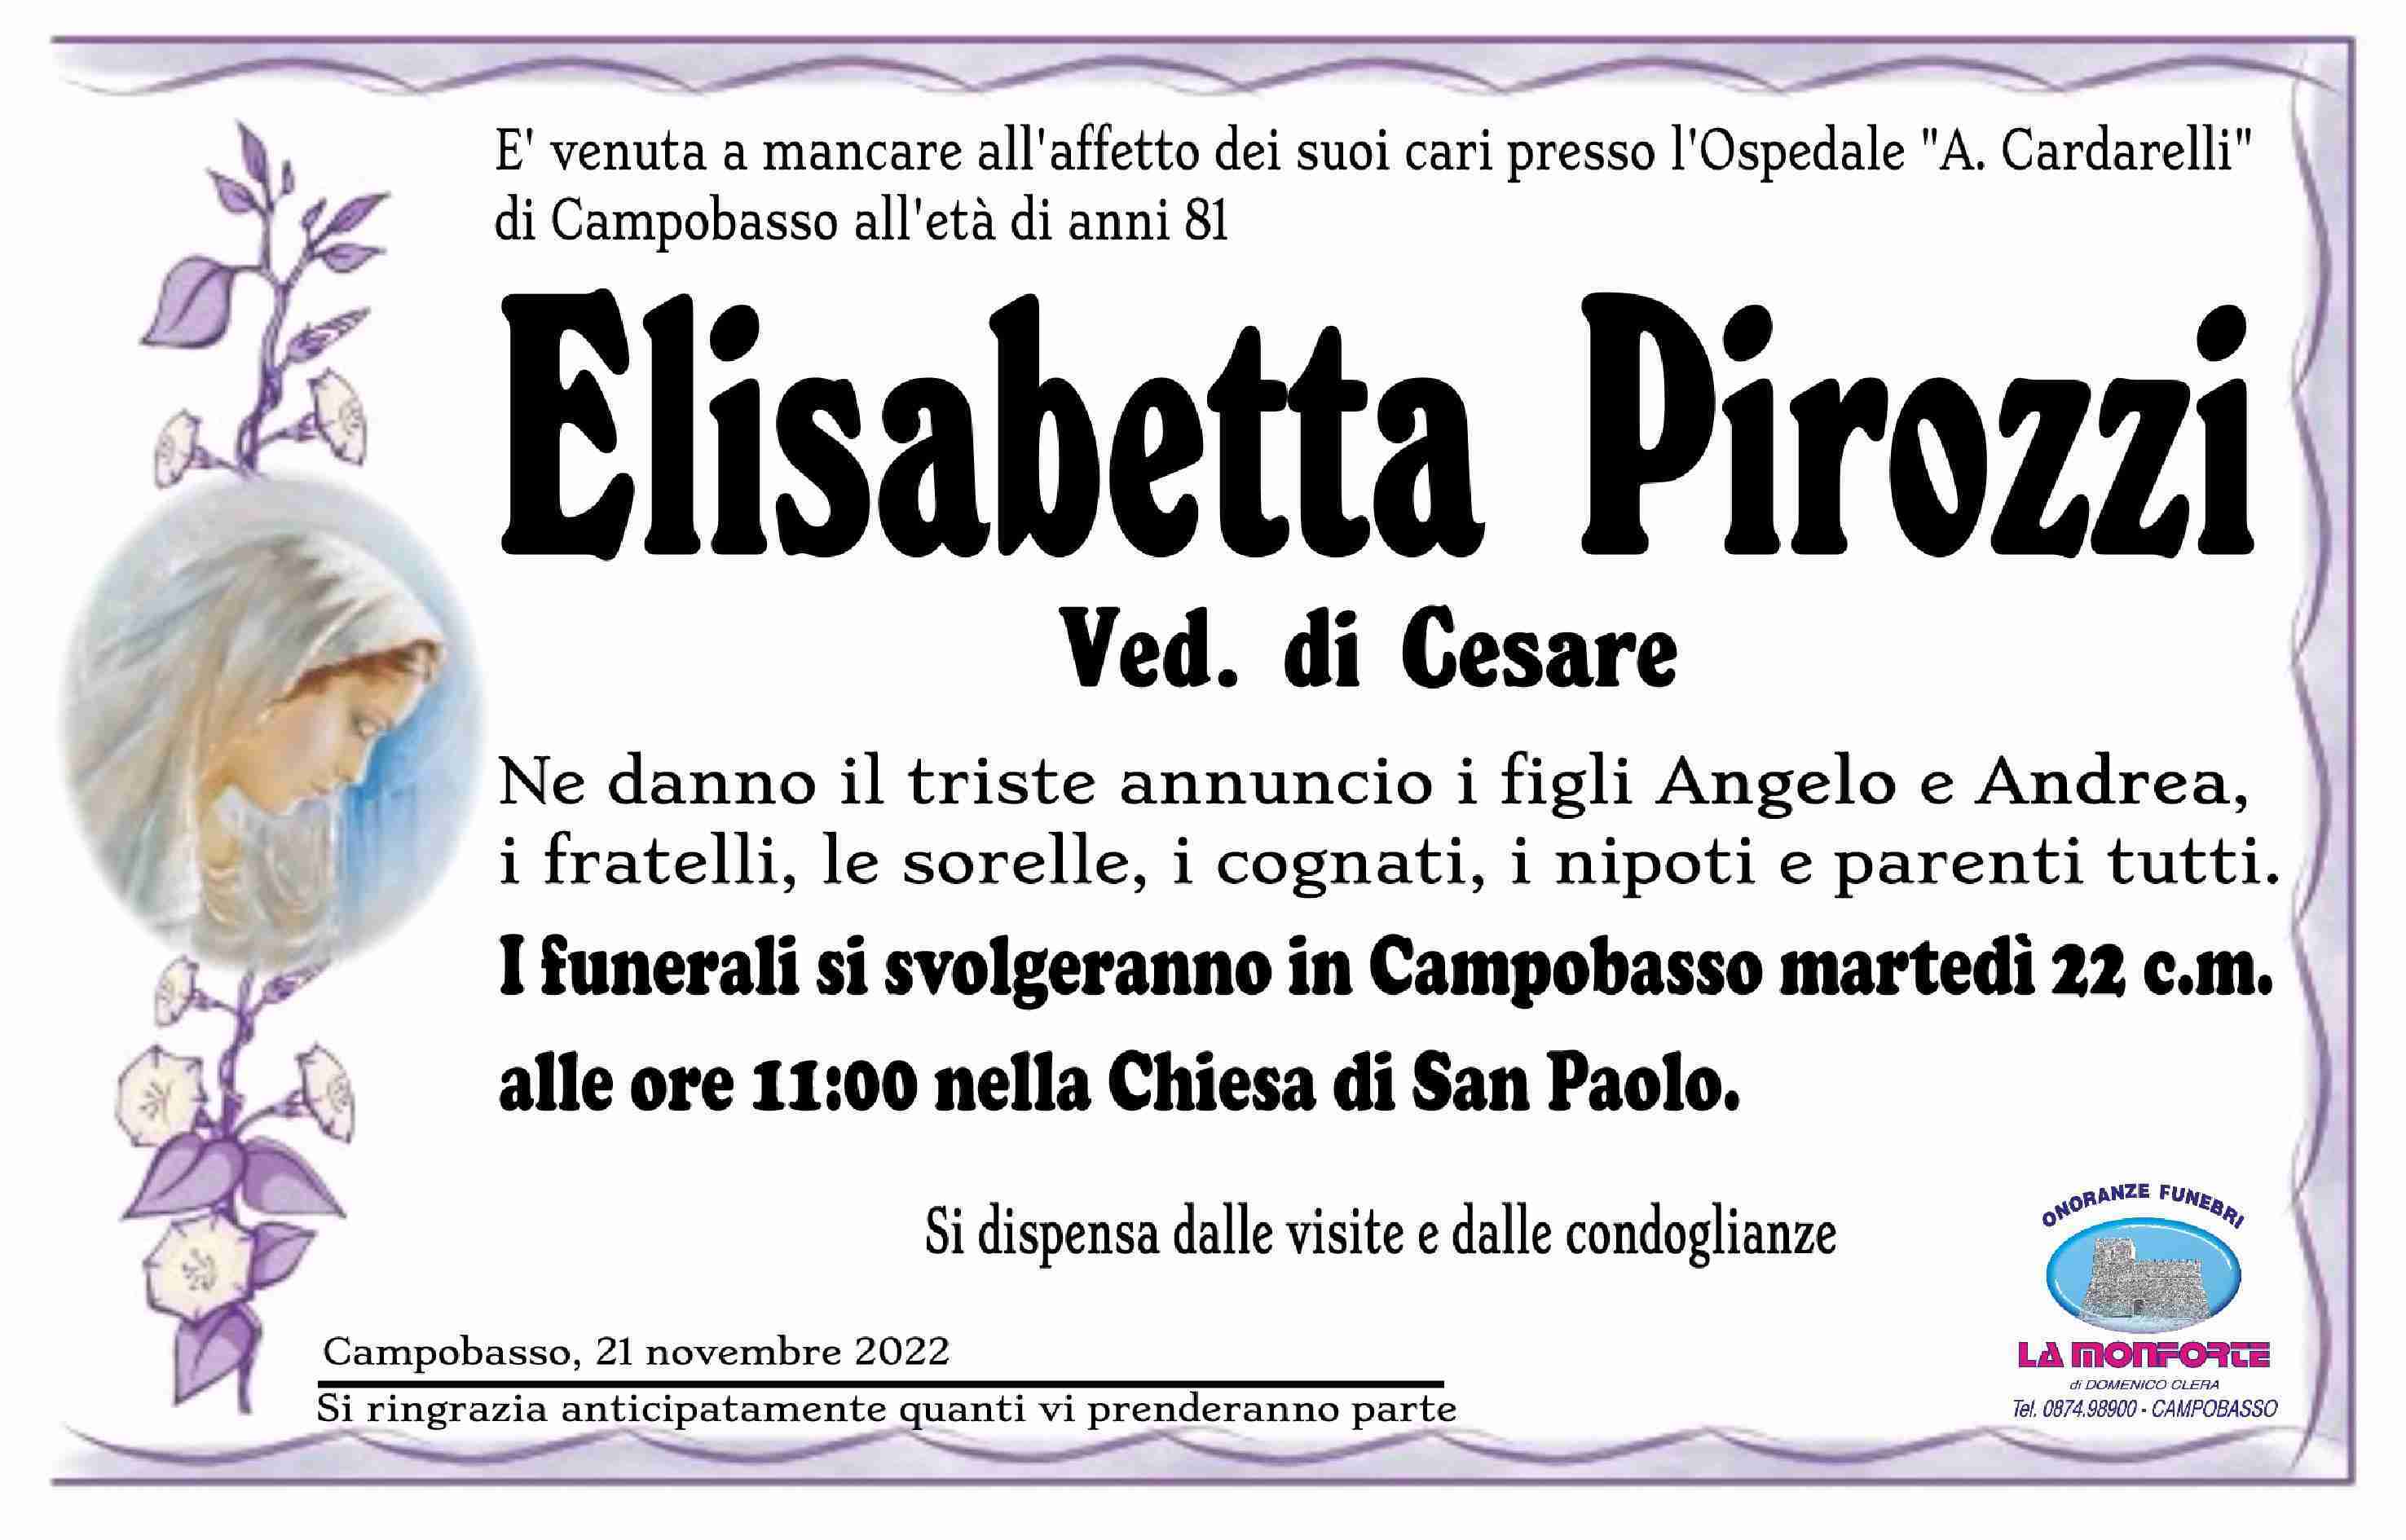 Elisabetta Pirozzi